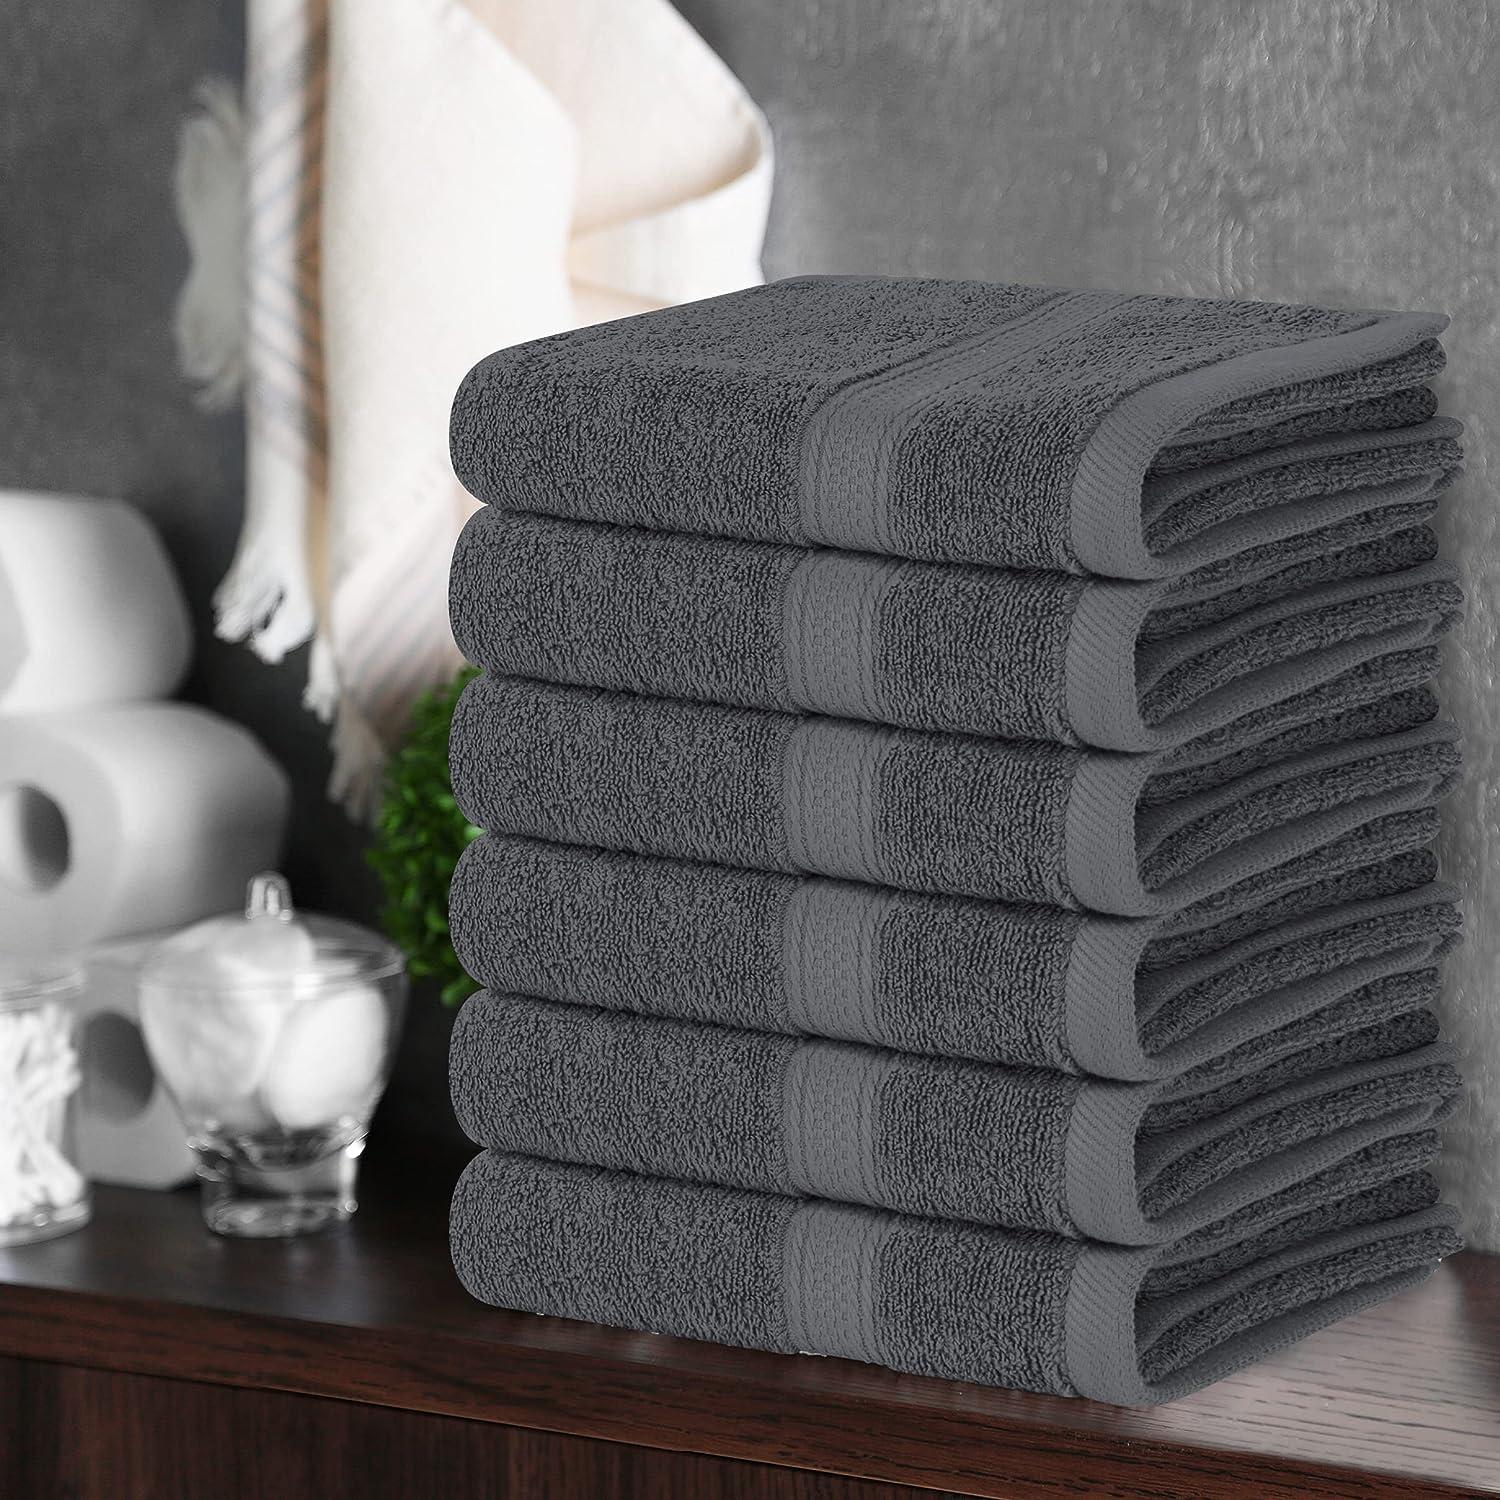 Utopia Towels Grey Towel Set, 2 Bath Towels, 2 Hand Towels, and 4  Washcloths, 60